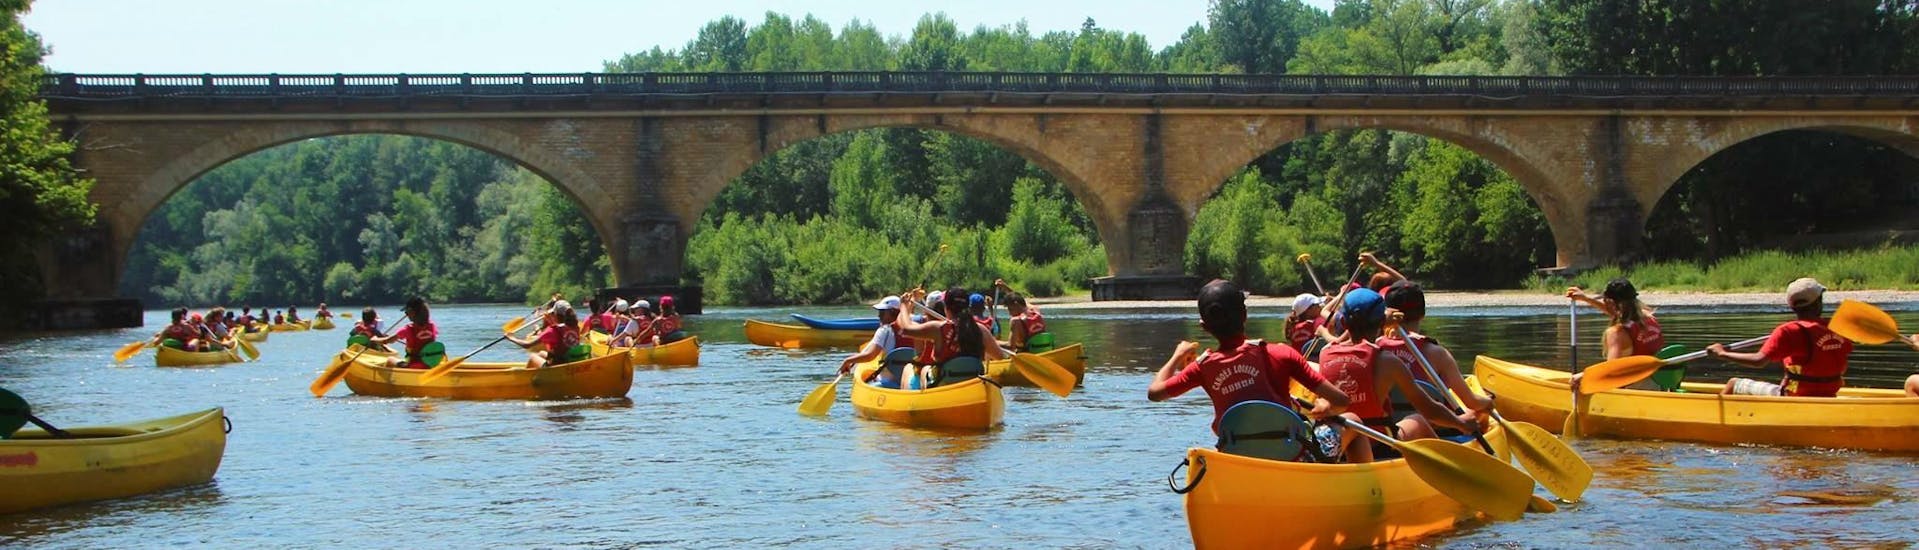 Alcuni partecipanti pagaiano sul fiume Dordogna durante il tour in canoa di 12 km con Canoës Loisirs Dordogne.